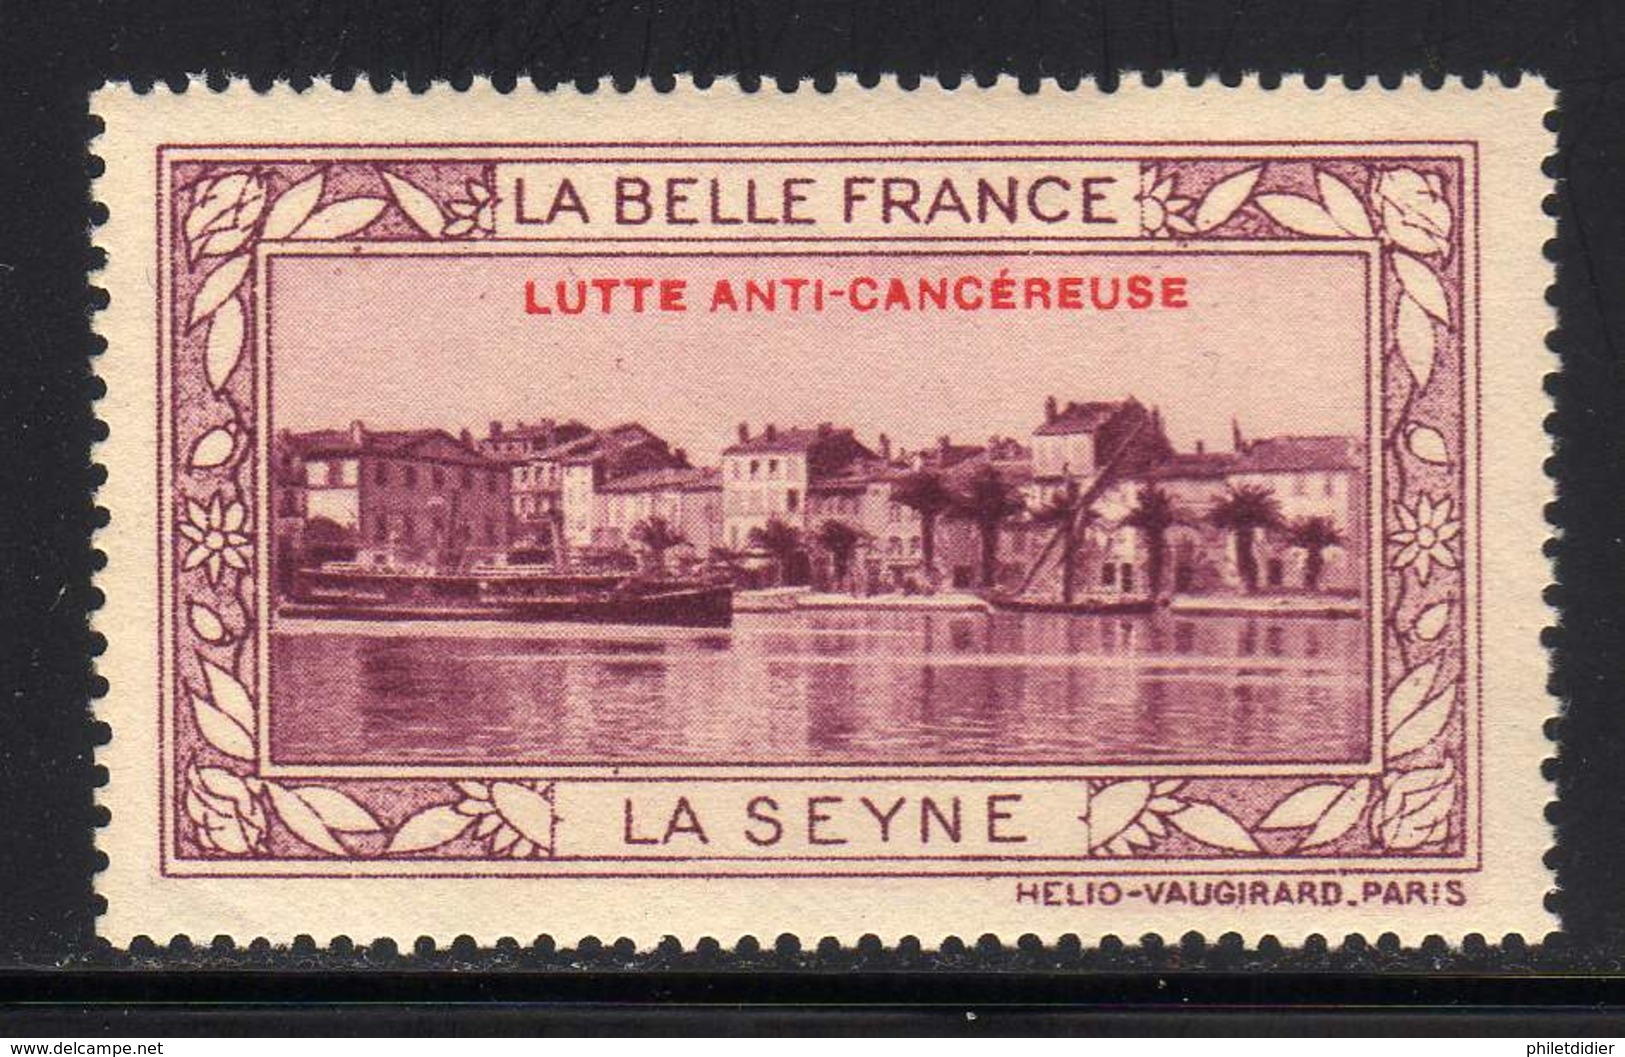 VIGNETTE NEUVE ** LA BELLE FRANCE - LUTTE ANTI-CANCEREUSE - LA SEYNE - Tourism (Labels)